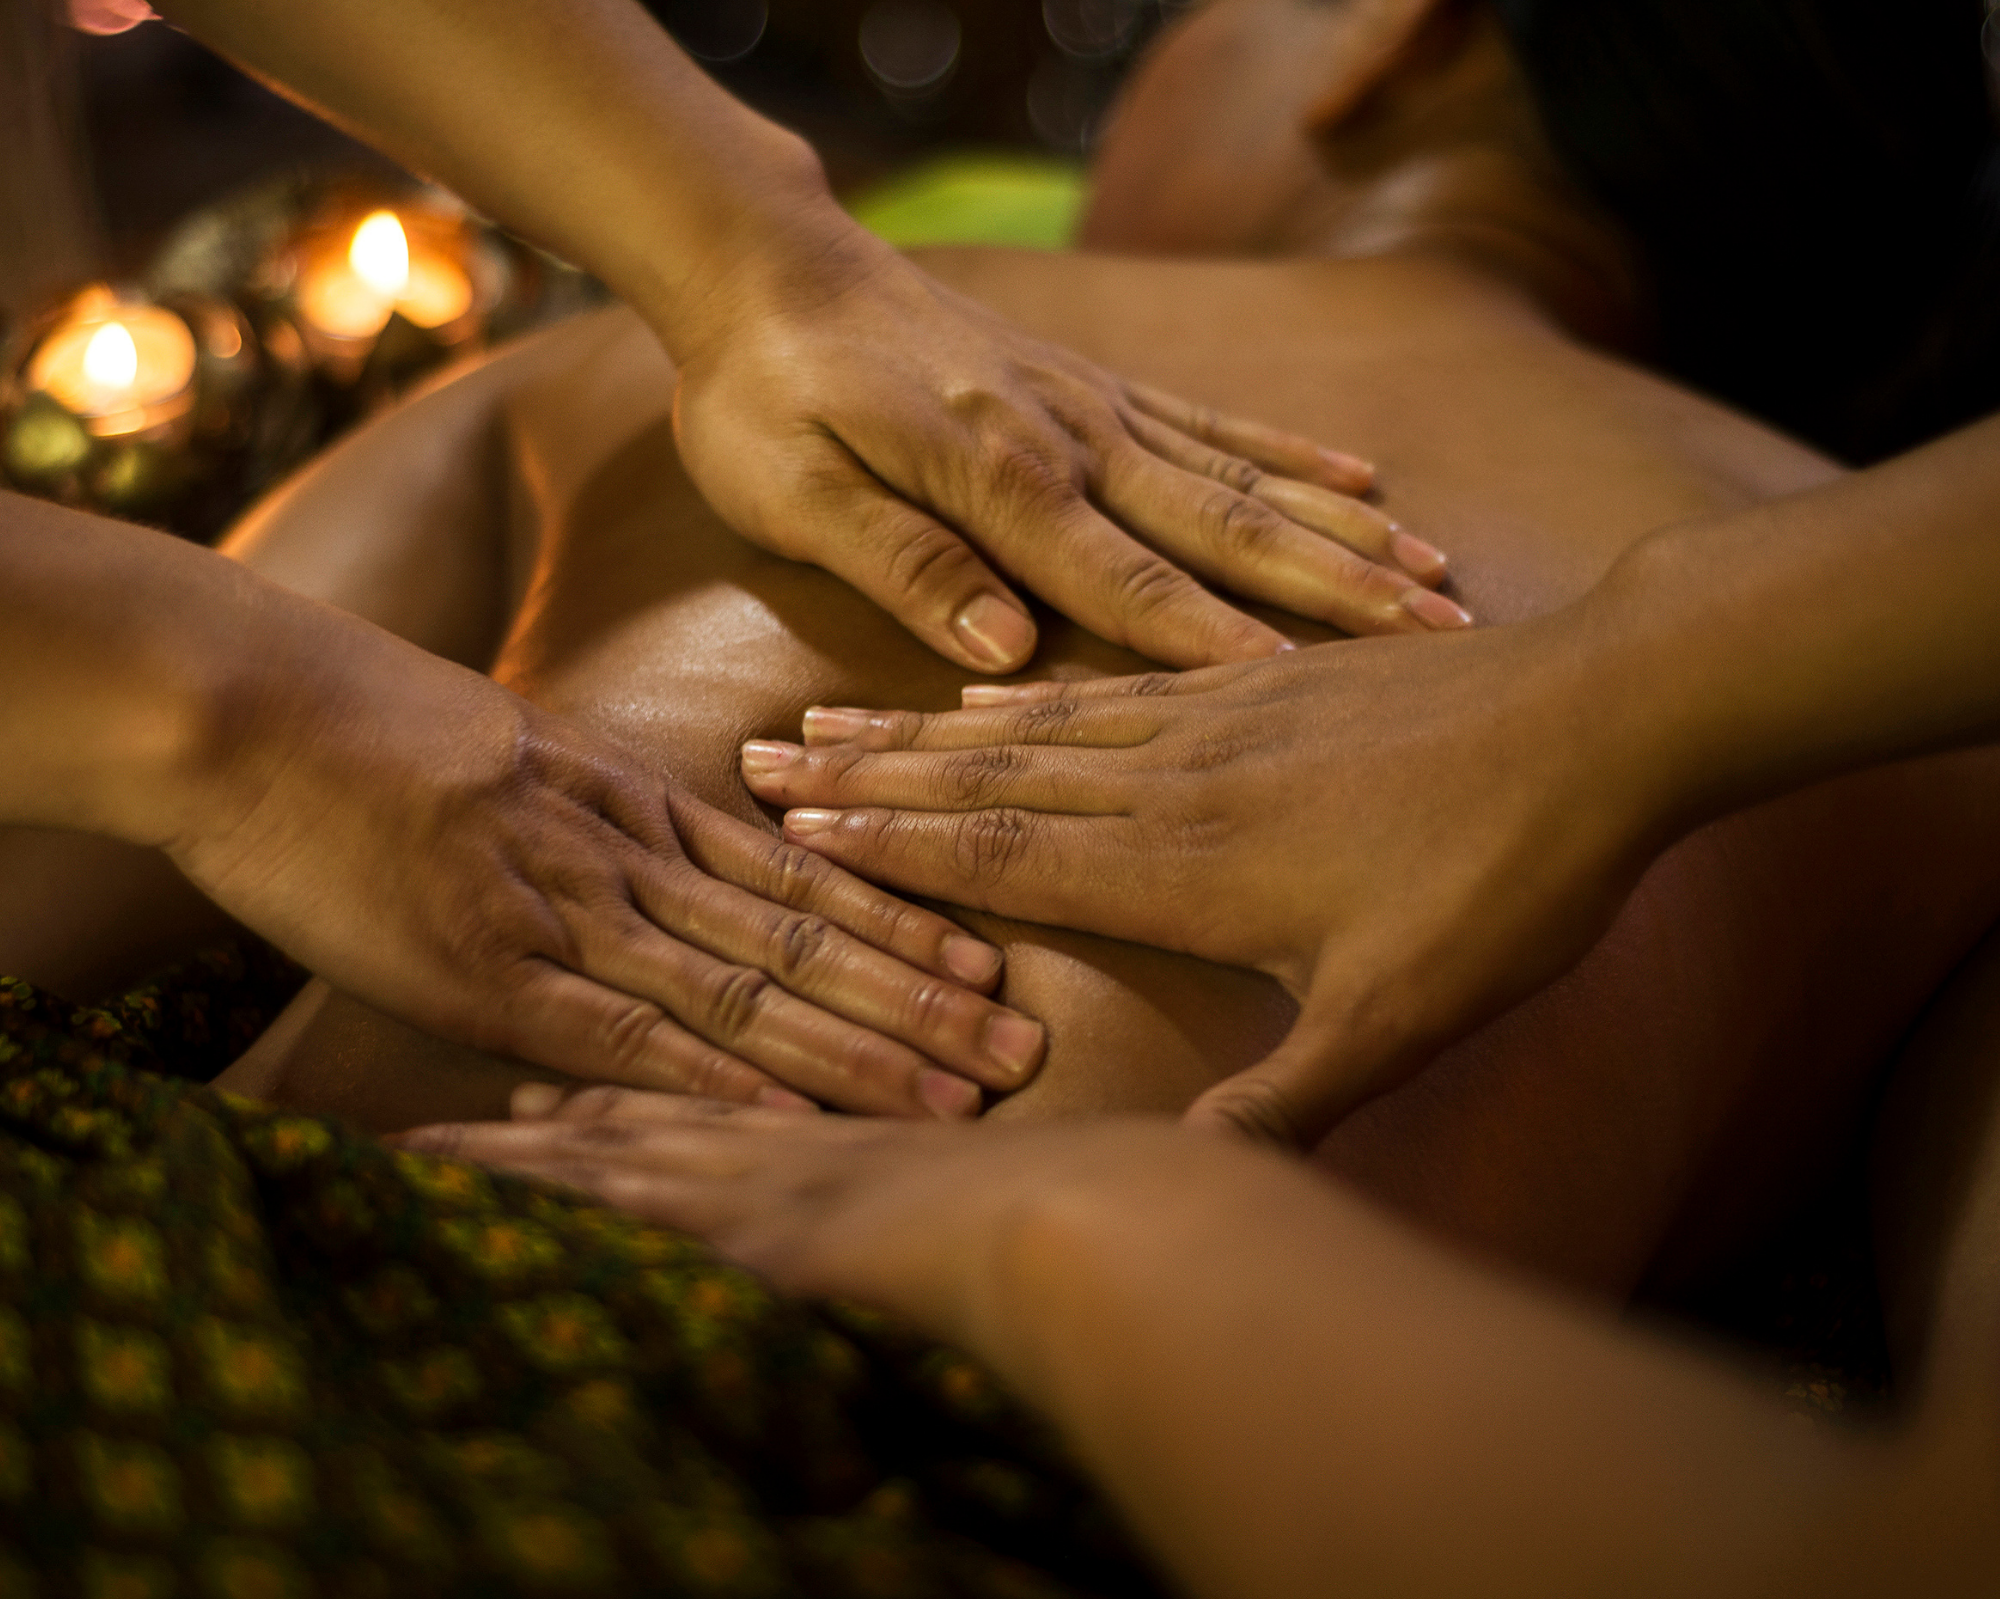 Тайский массаж для мужчин видео. Королевский тайский массаж в 4 руки. Массаж рук. Королевский массаж для мужчин. Балийский массаж мужчине.